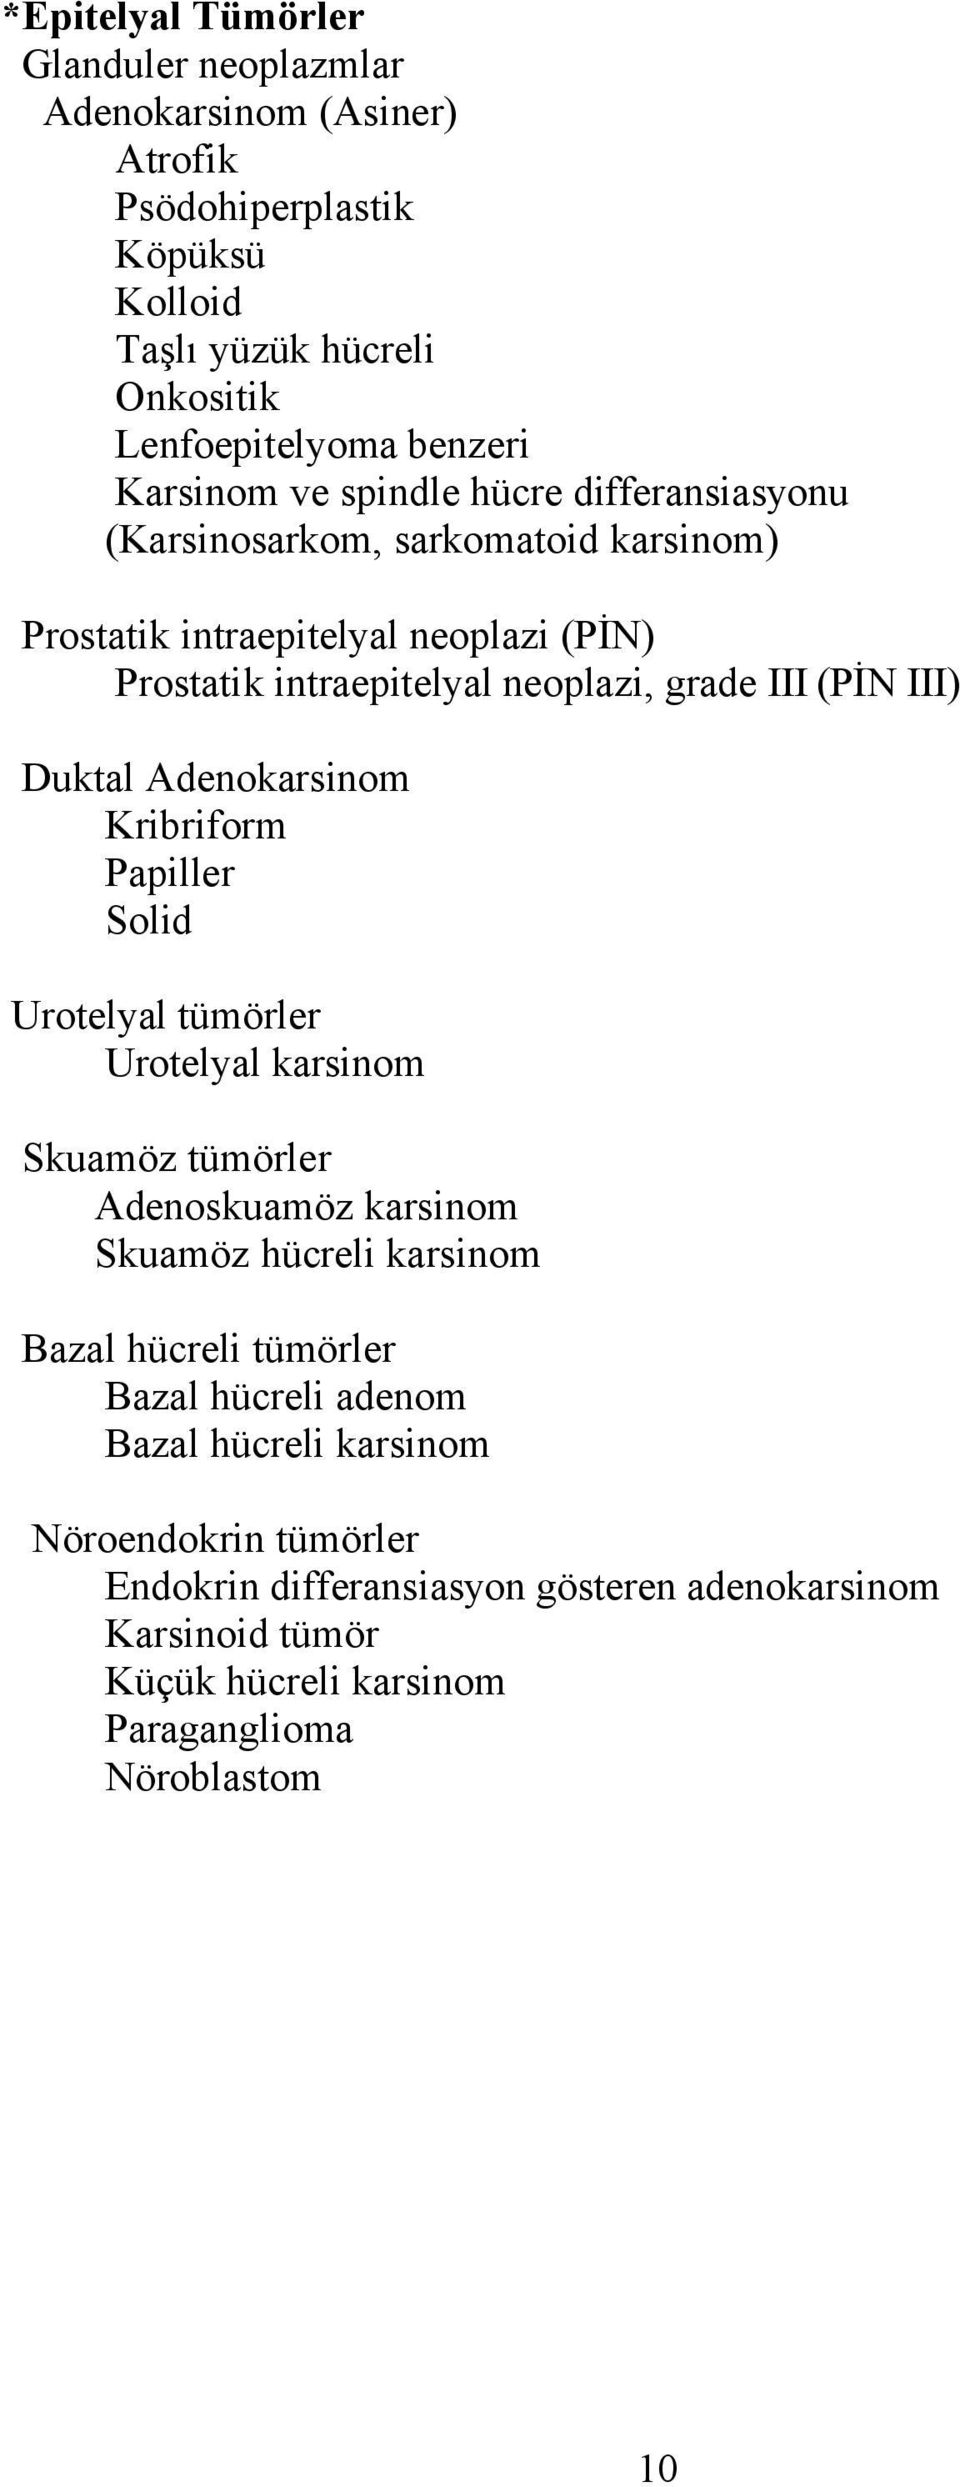 Adenokarsinom ribriform Papiller Solid Urotelyal tümörler Urotelyal karsinom Skuamöz tümörler Adenoskuamöz karsinom Skuamöz hücreli karsinom Bazal hücreli tümörler Bazal